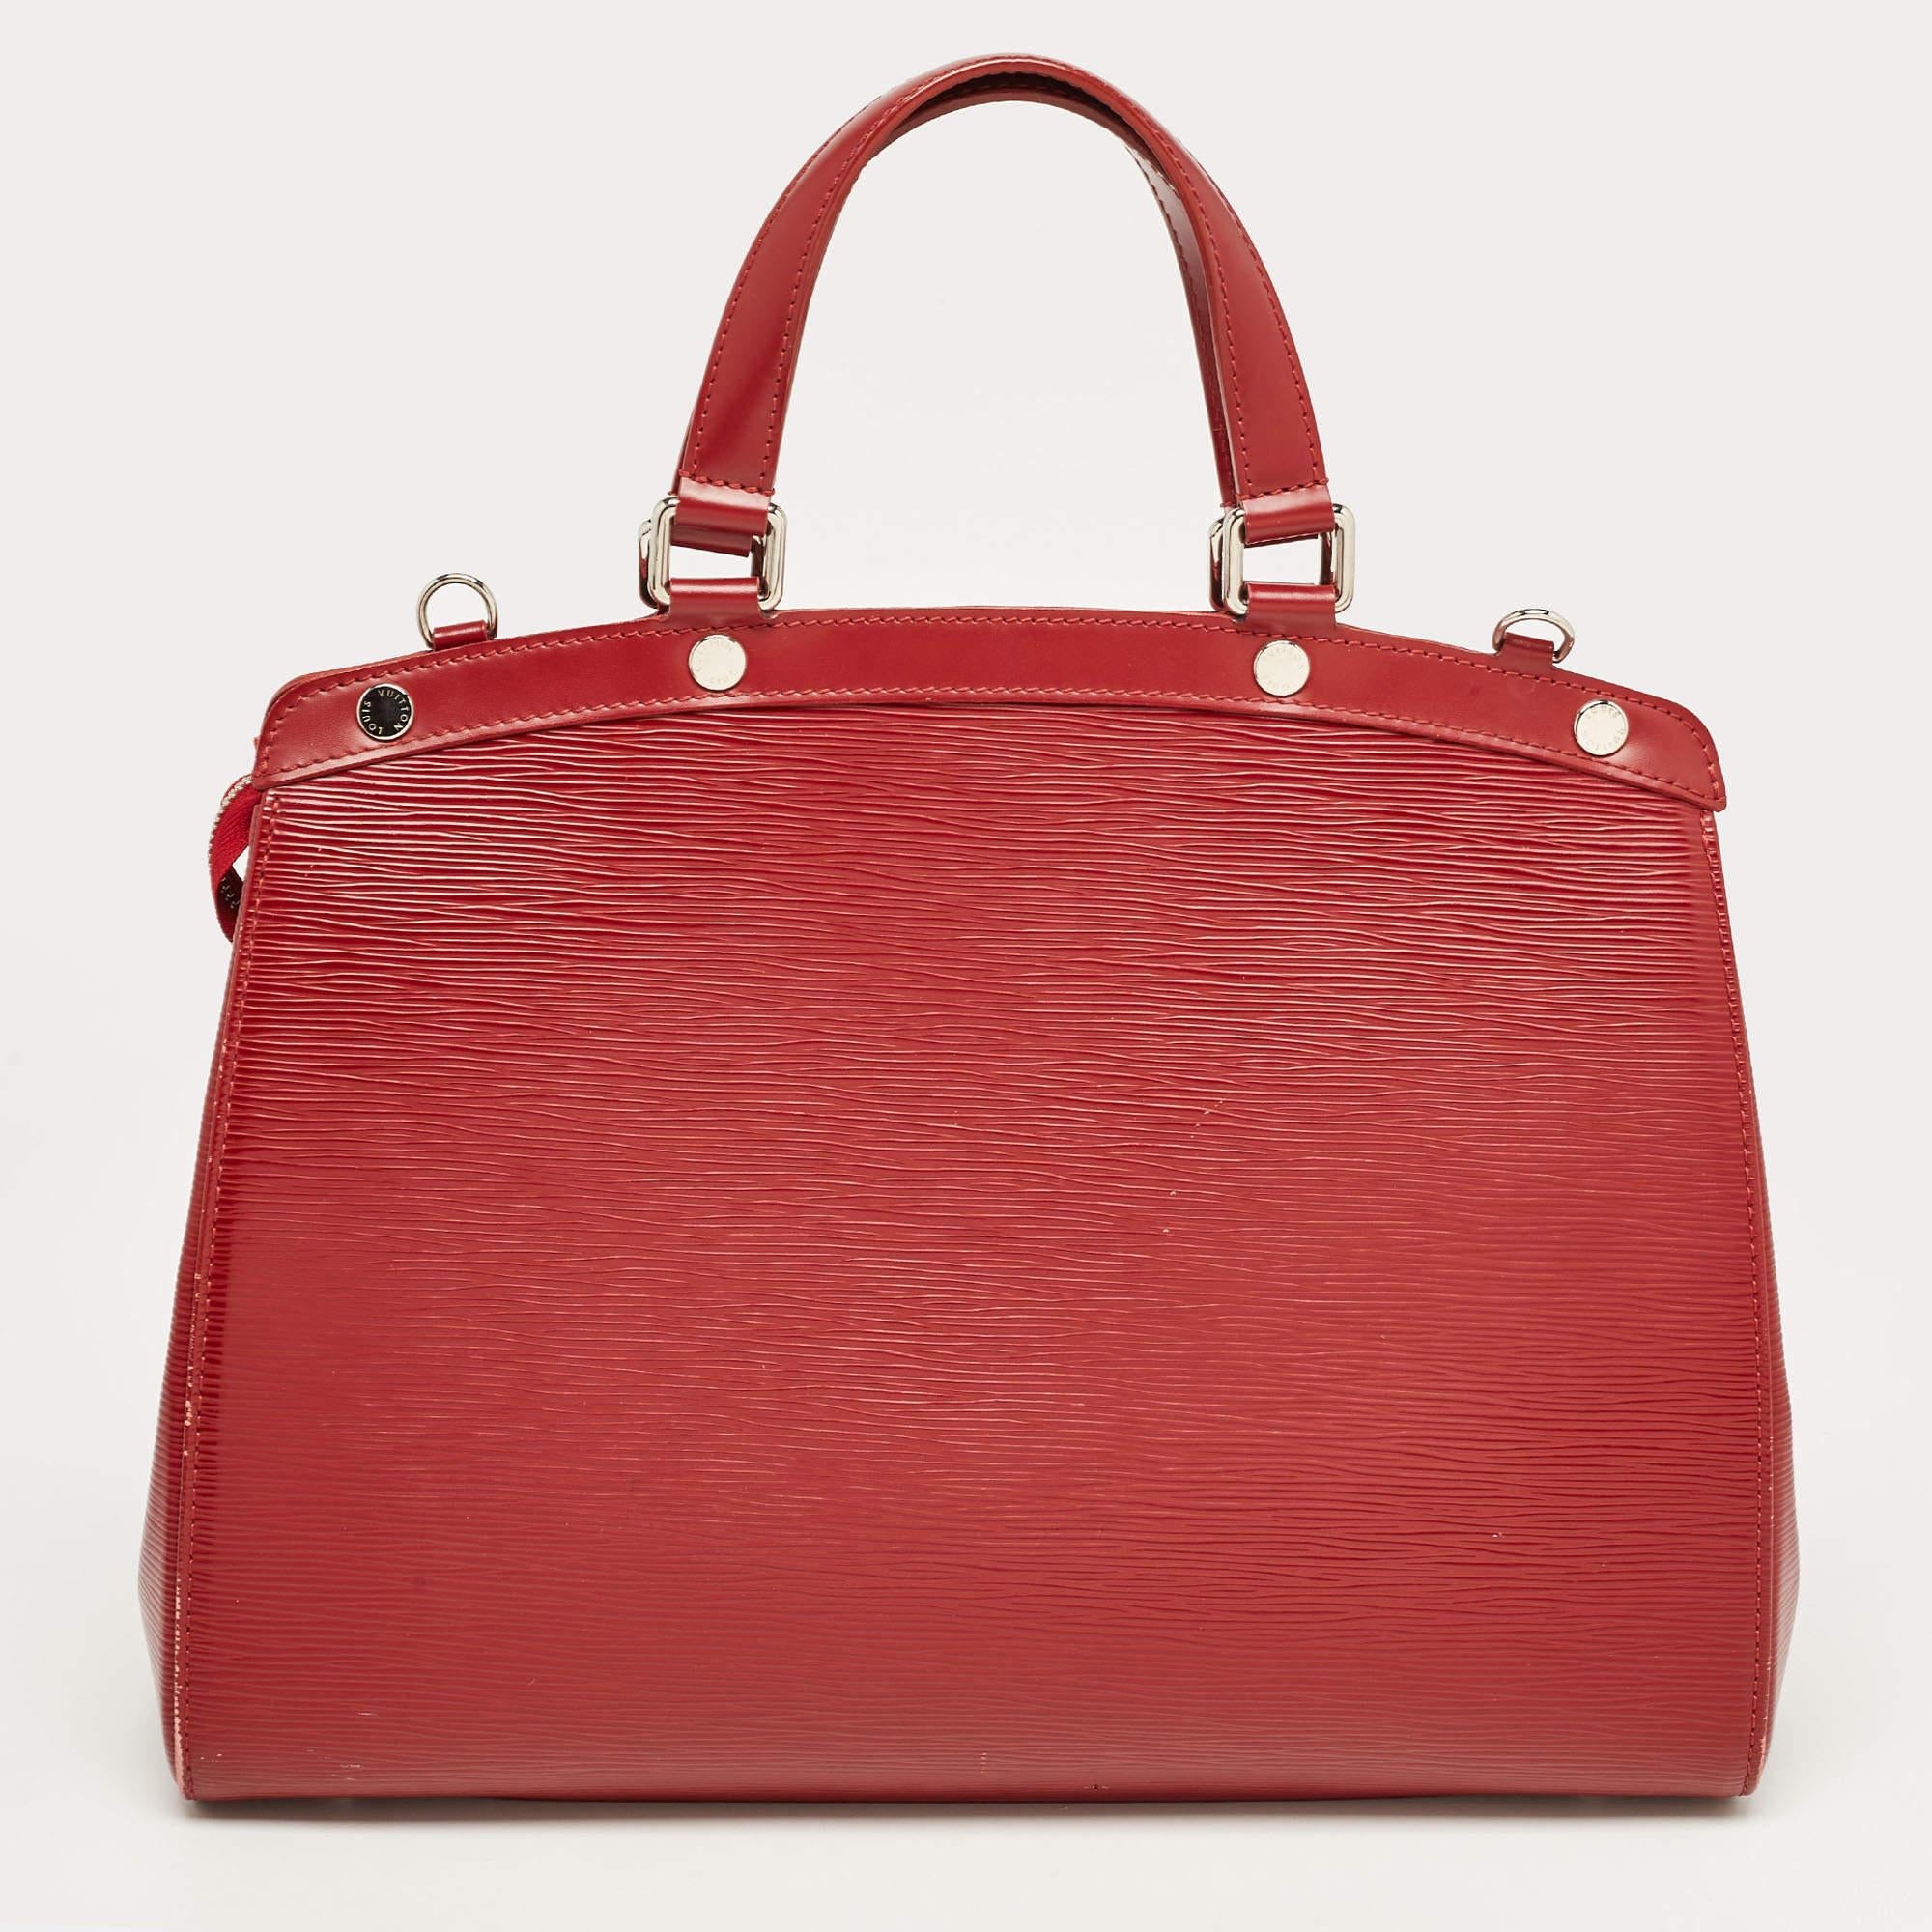 Les créations de Louis Vuitton sont populaires en raison de leur style élevé et de leur fonctionnalité. Ce sac, comme tous les autres sacs à main, est durable et élégant. D'une finition soignée, le sac est conçu pour offrir une expérience luxueuse.